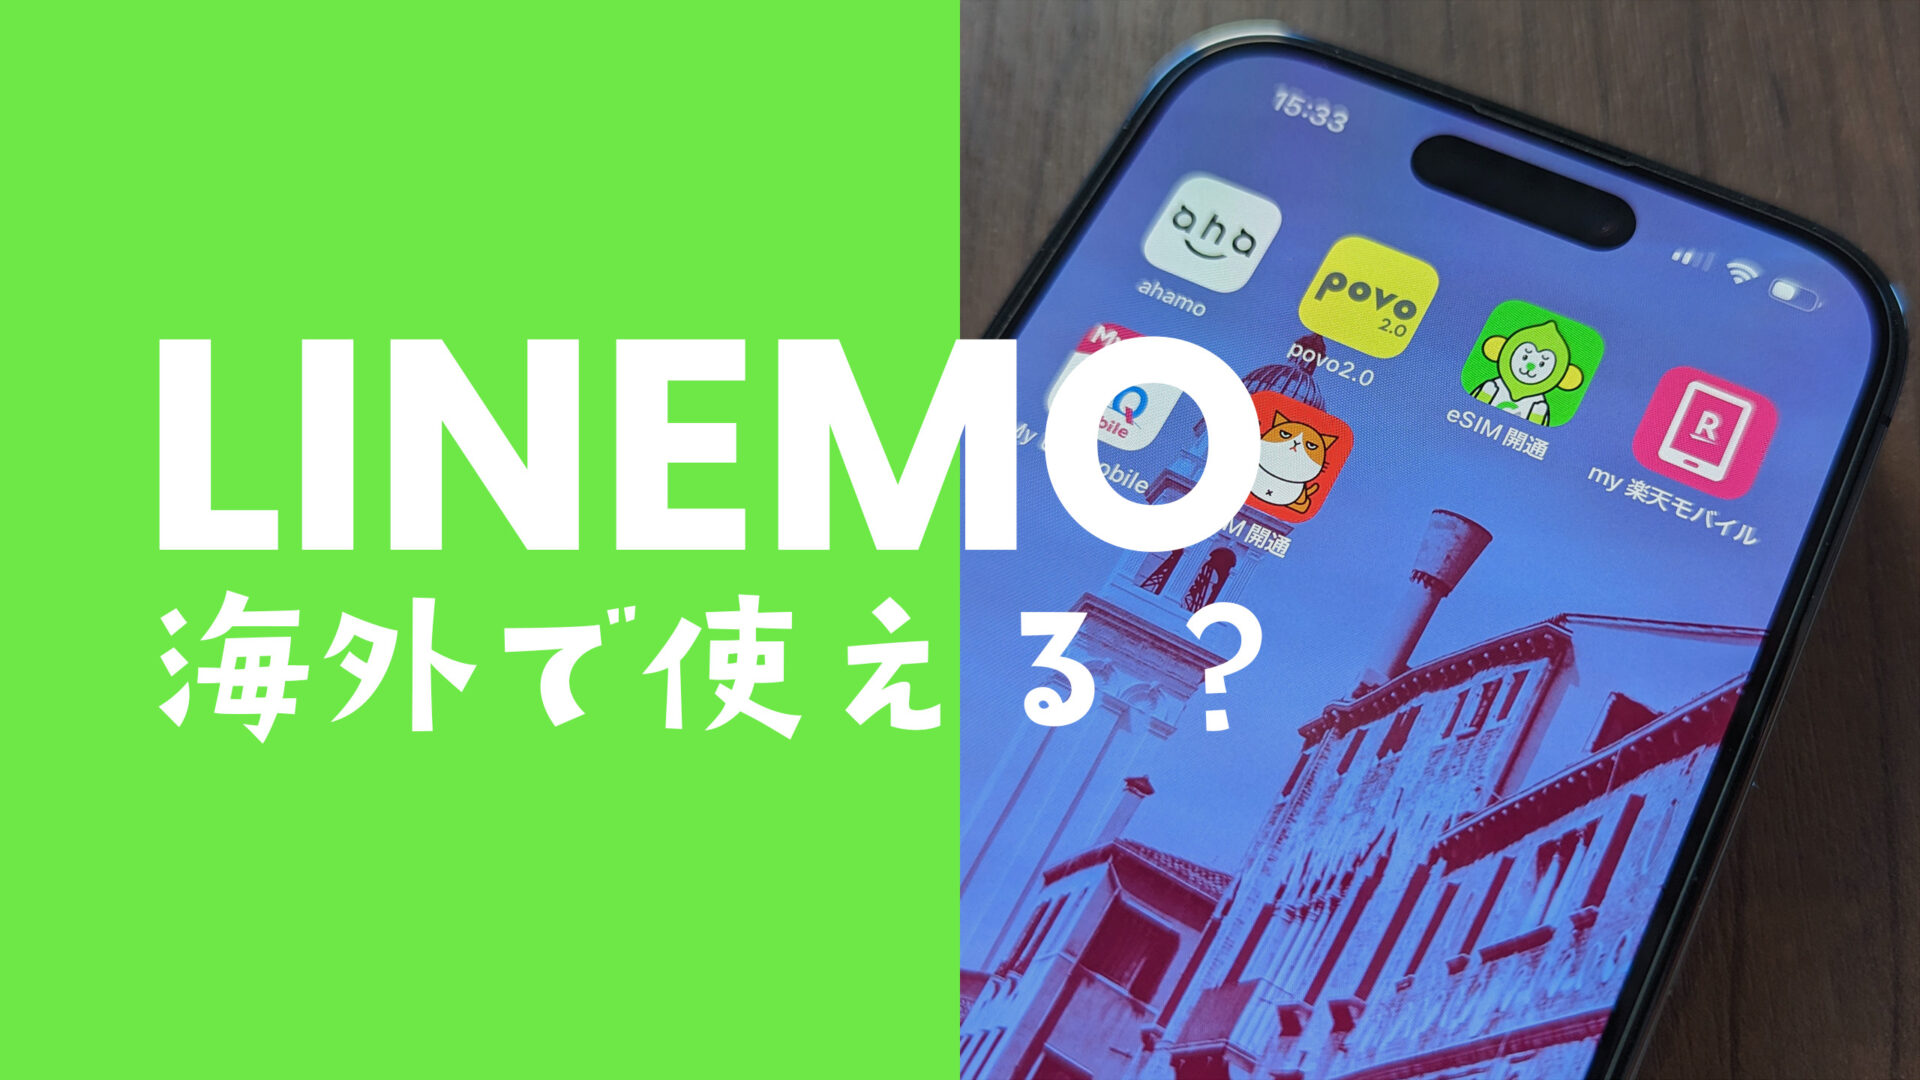 LINEMO(ラインモ)は韓国で使える&事前申込がお得。データ通信や電話&SMSもローミング。のサムネイル画像